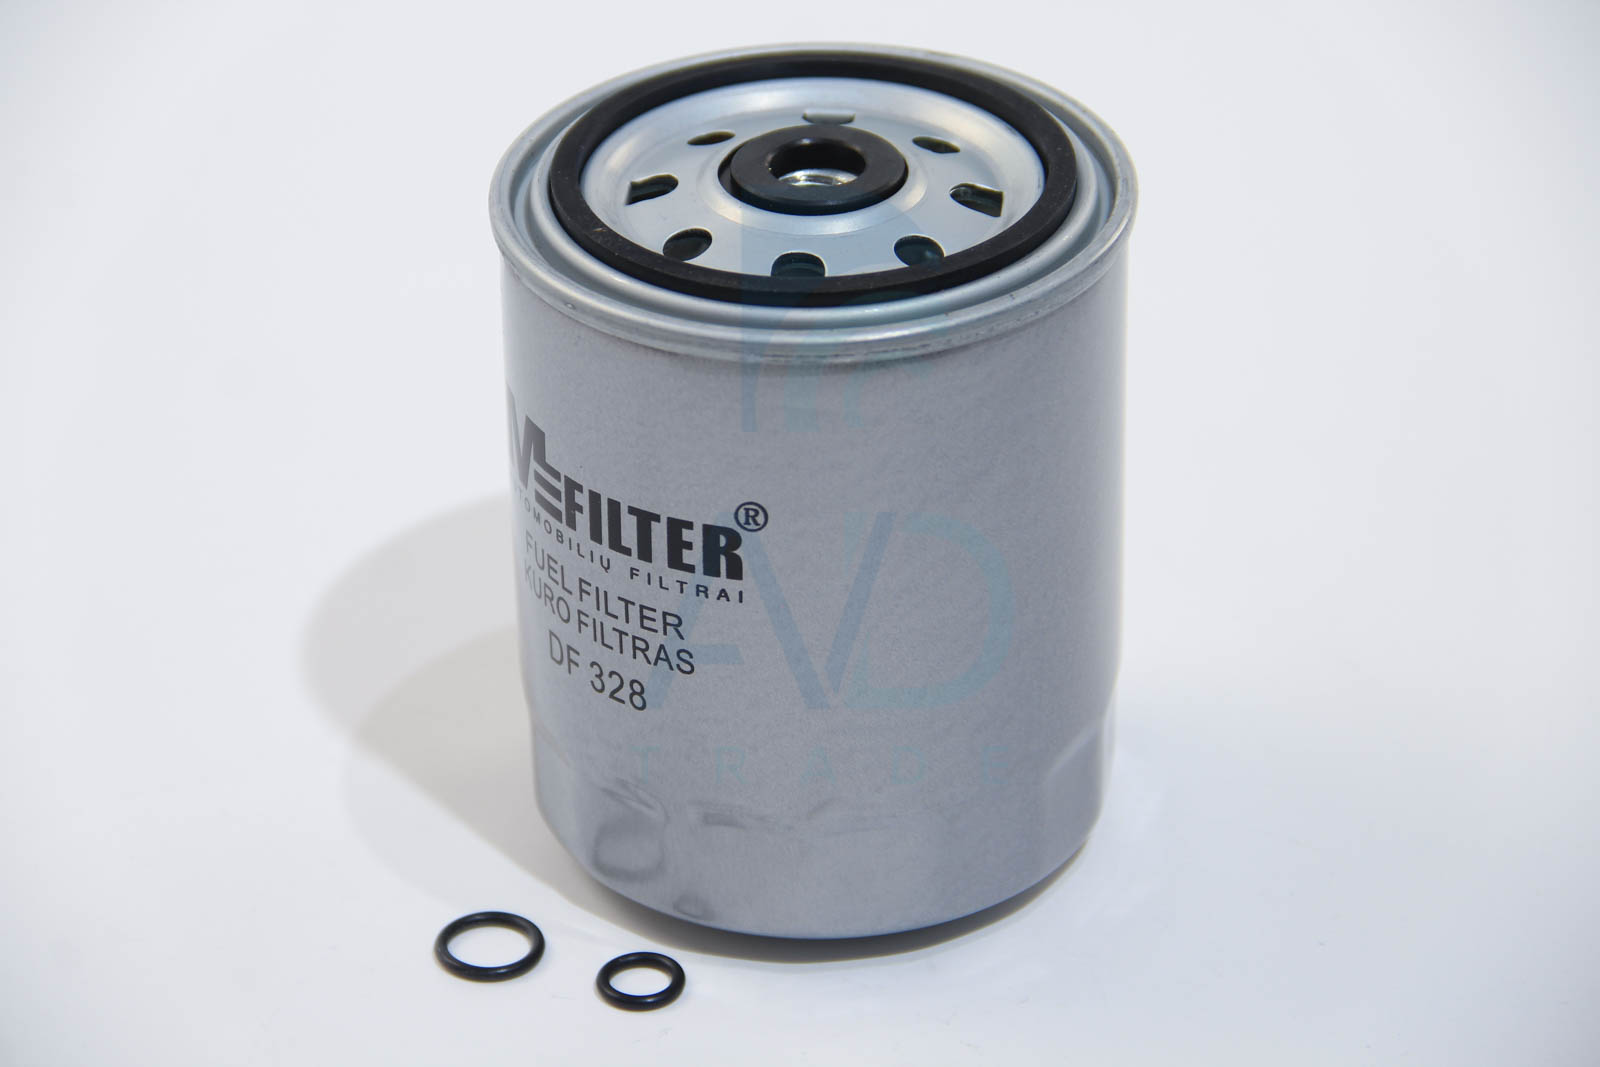 Фильтр топливный MERCEDES (M-Filter) MAHLE арт. DF 328